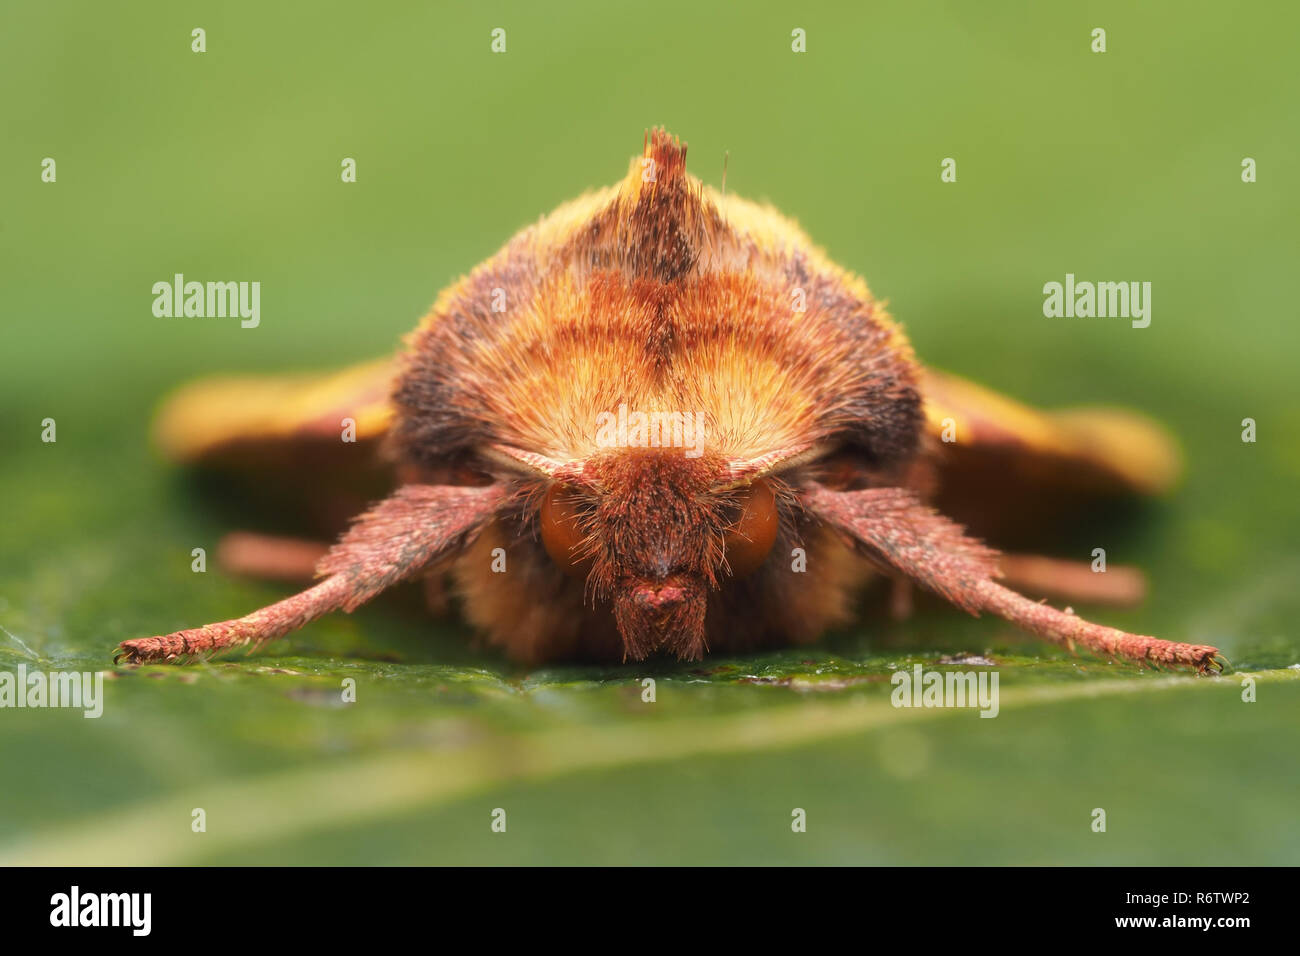 Frontalansicht des Rosa verjähren Gelblich Motte (Xanthia togata) auf Blatt ruht. Tipperary, Irland Stockfoto